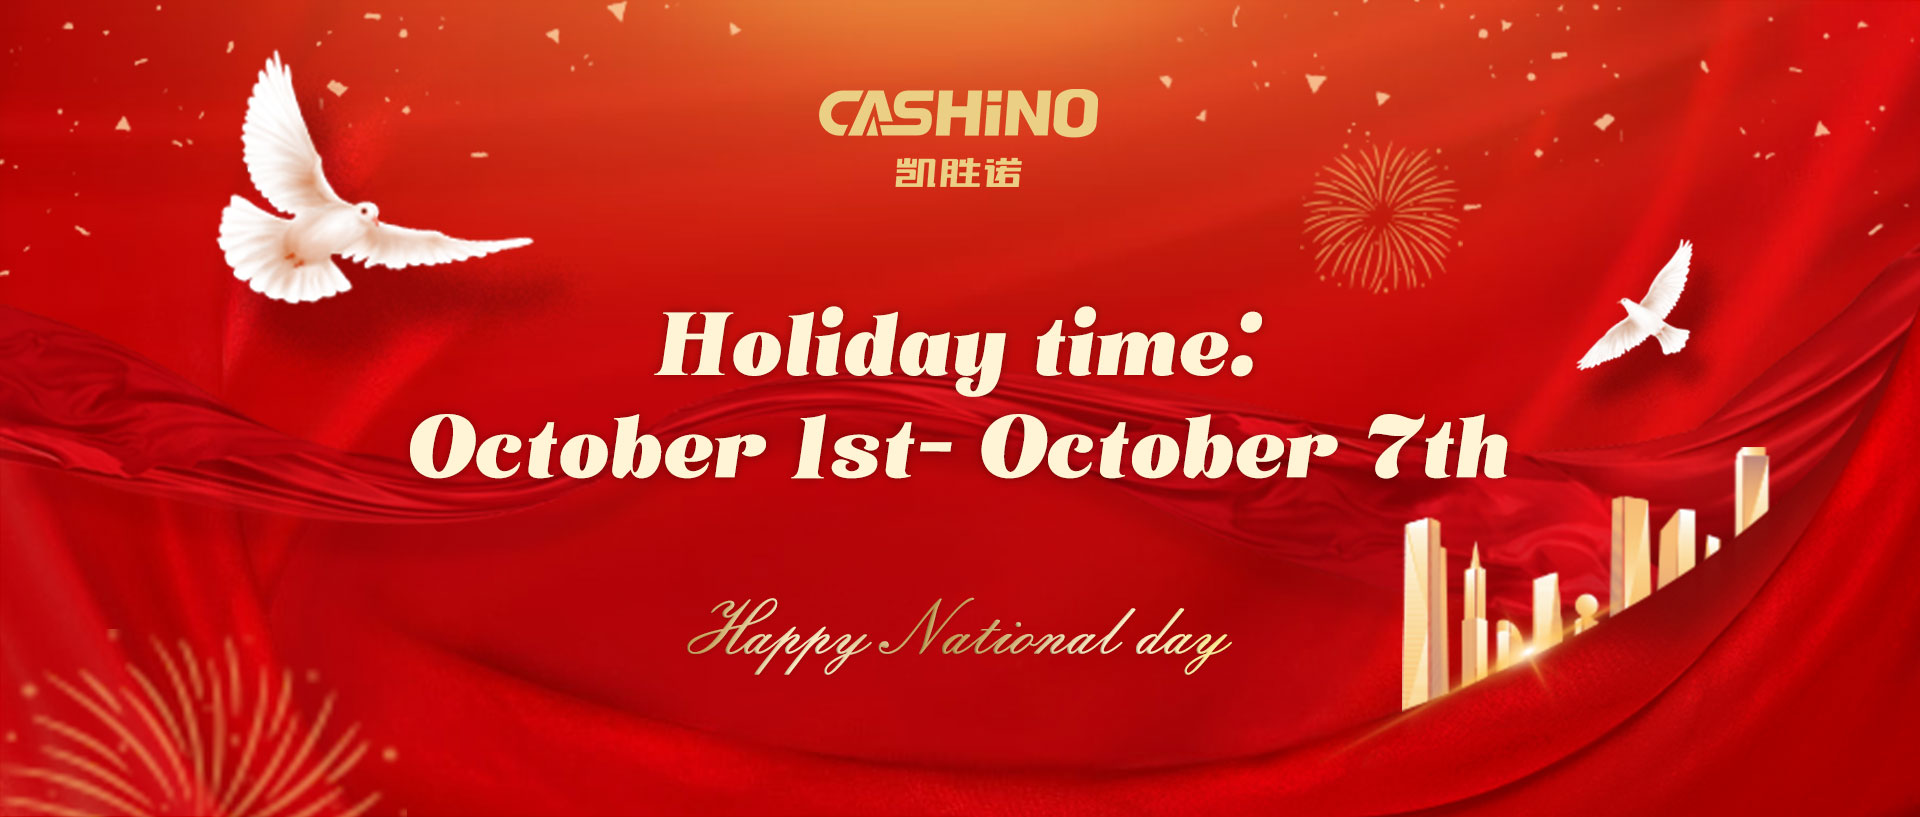 CASHINO Holiday Notice